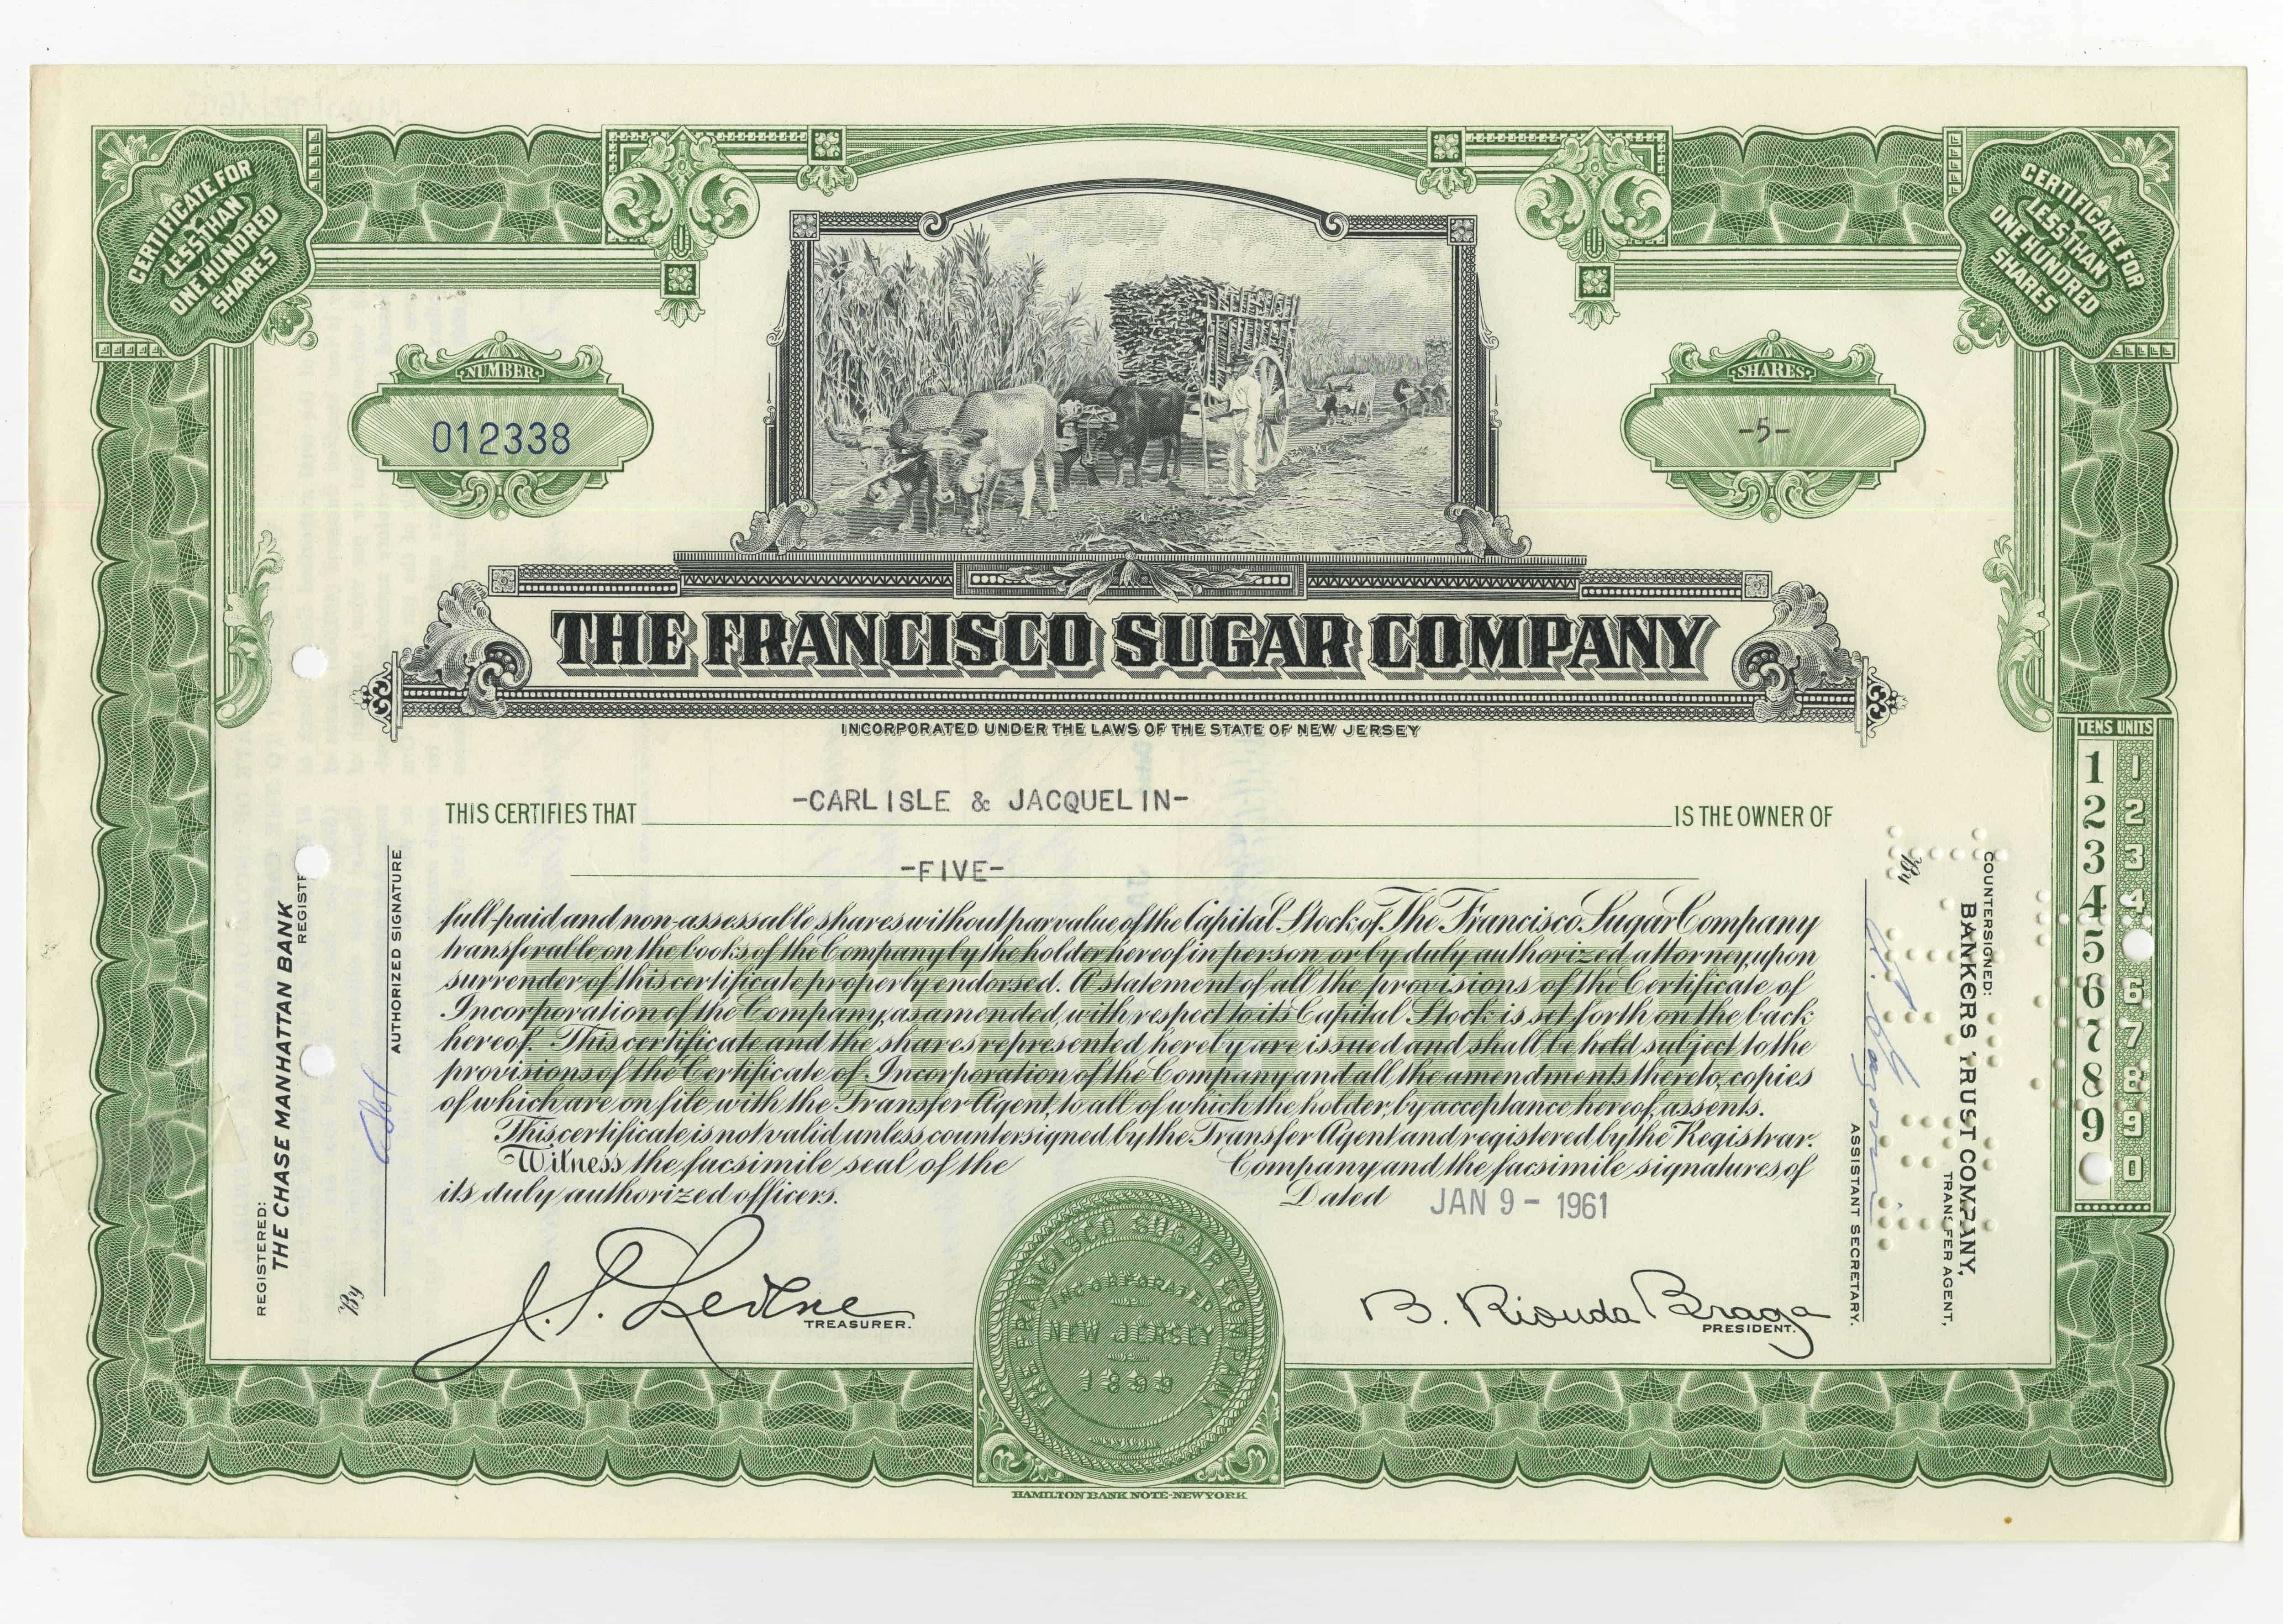 5 akcji spółki The Francisco Sugar Company z dnia 9 stycznia 1961 roku